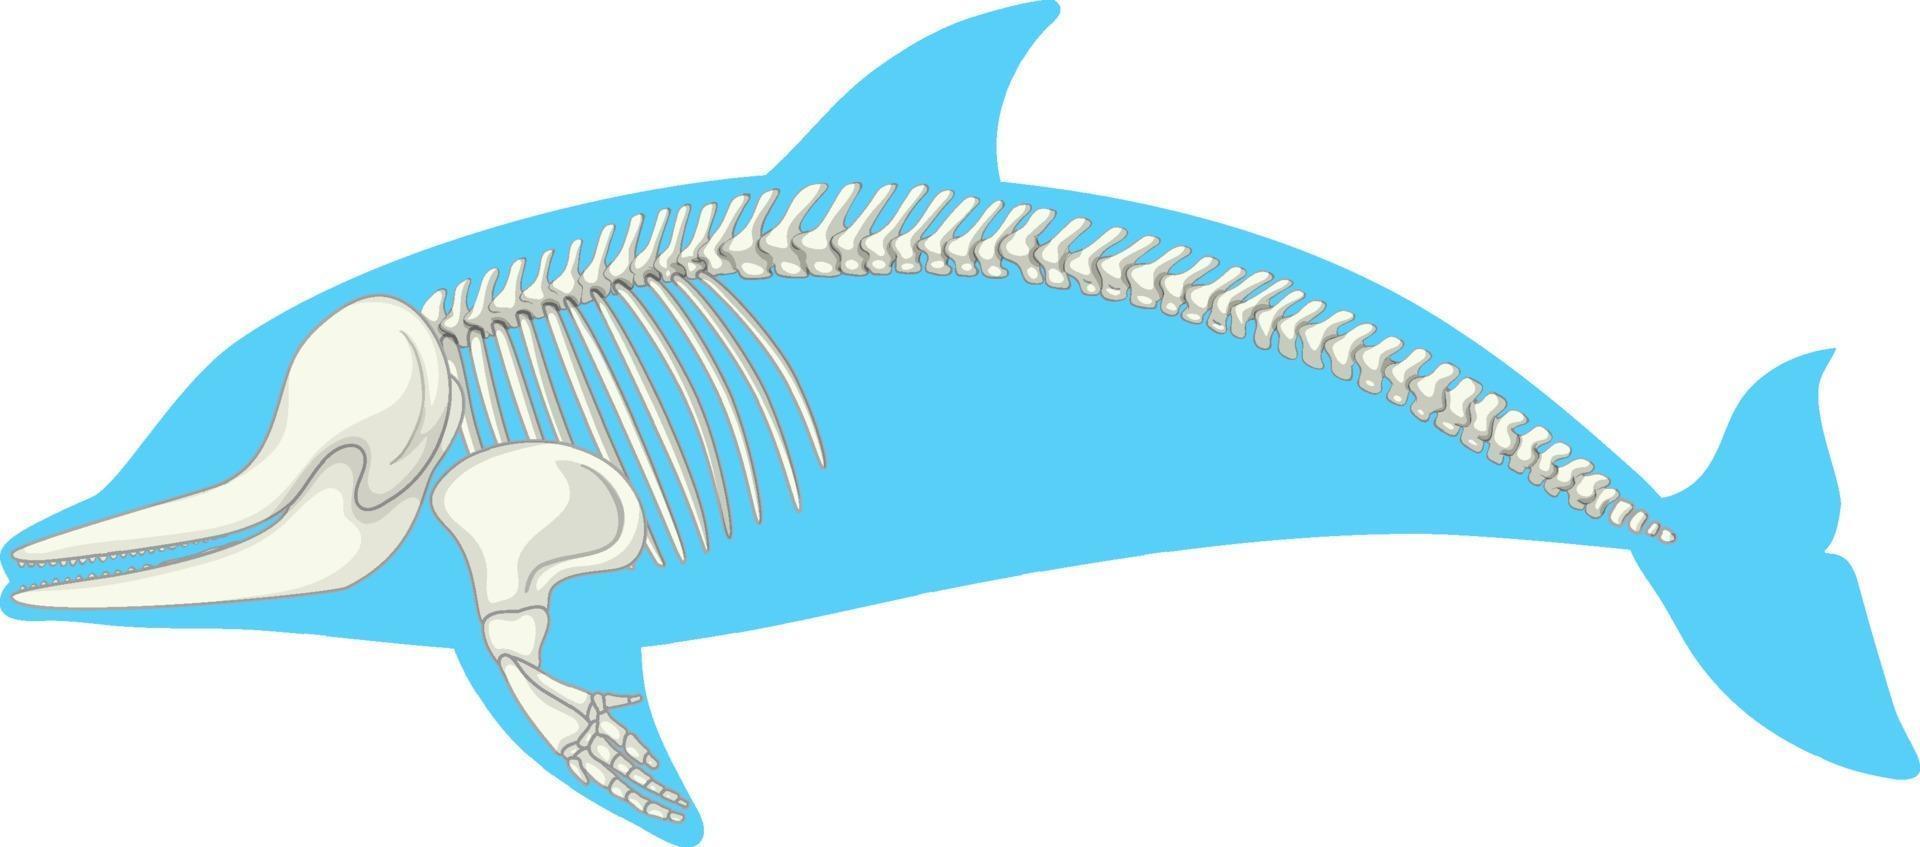 esqueleto anatomia de golfinho isolado no fundo branco vetor